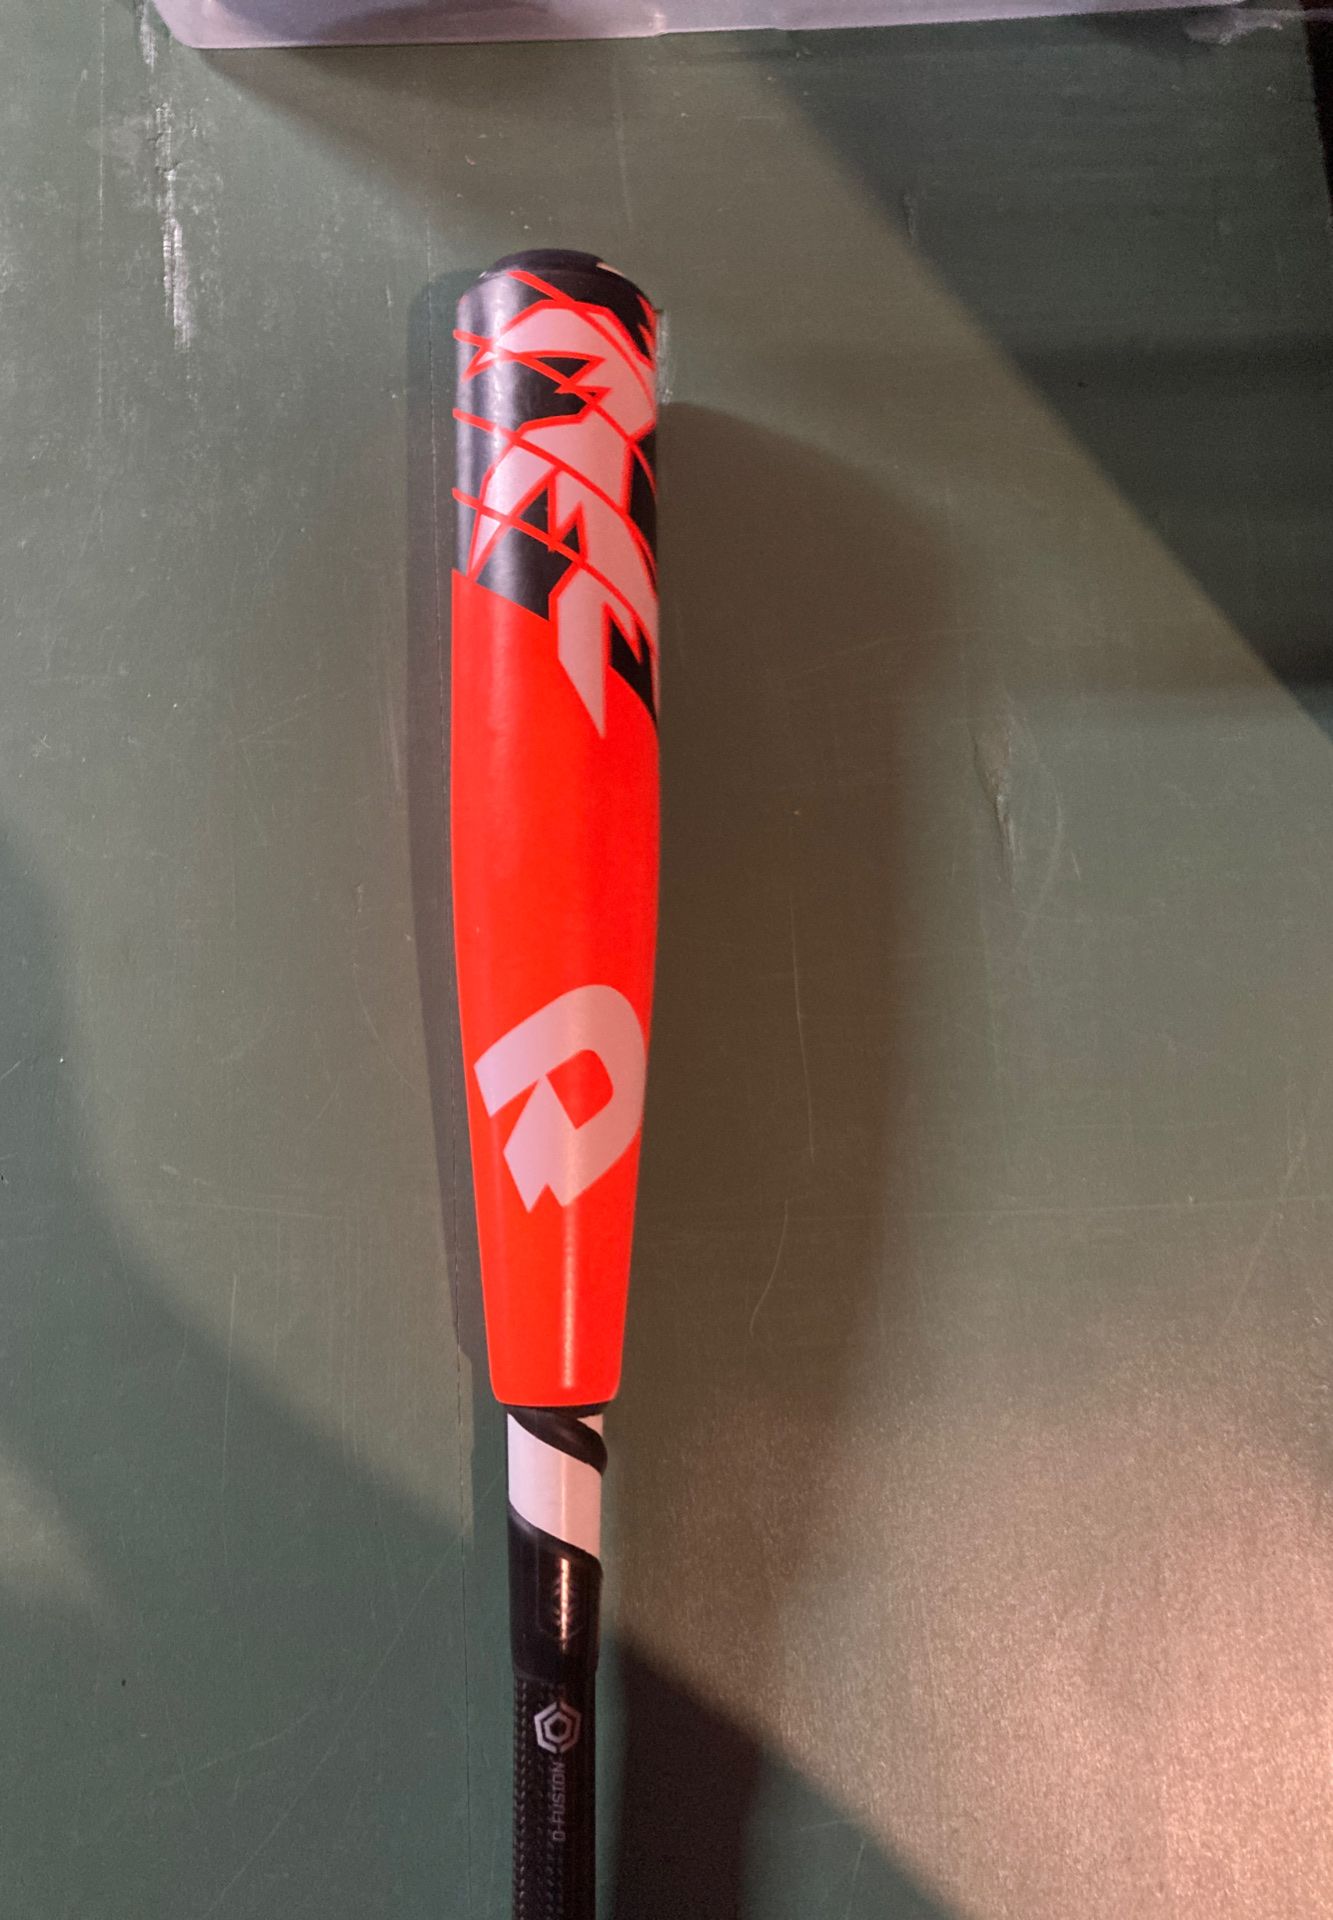 Demarini fusion -13, 15 ounce, 28 inch baseball bat